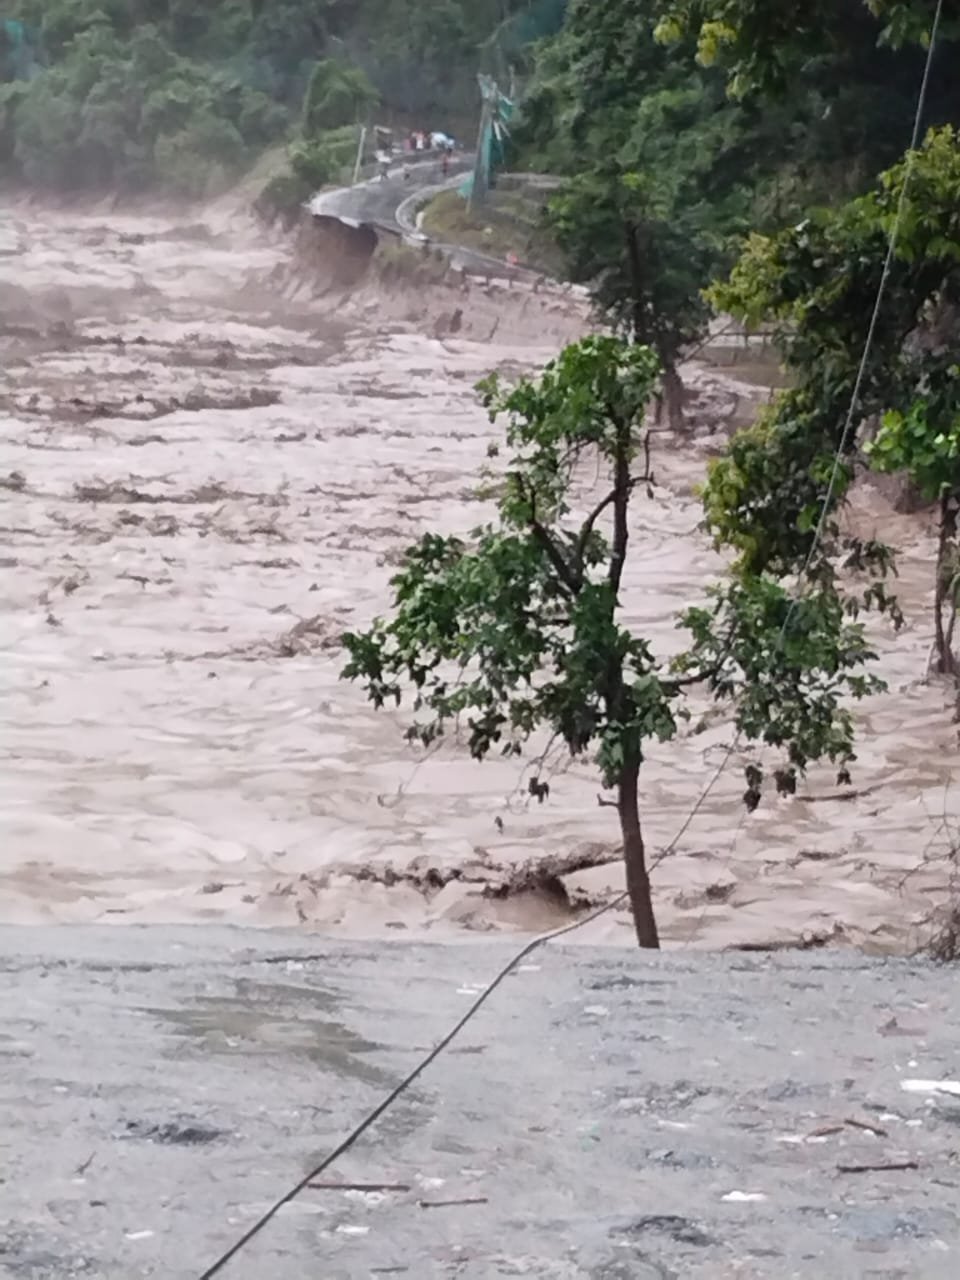 23 जवान लापता: सिक्किम में बादल फटने से आई बाढ़, कई जवान लापता